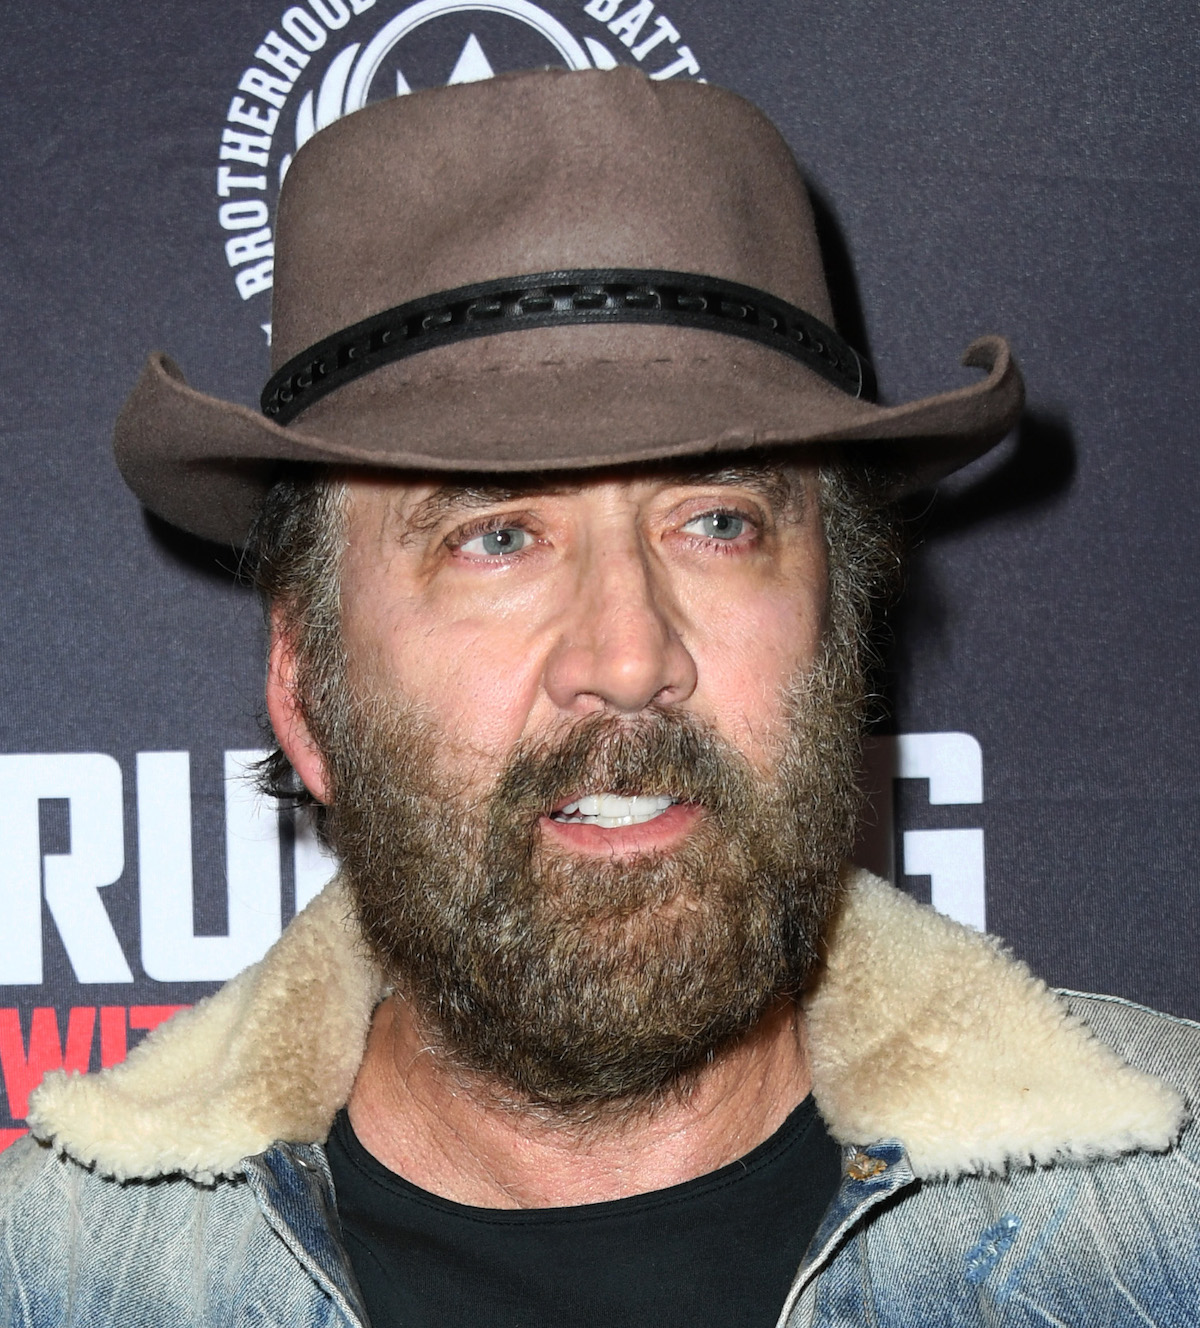 Nicolas Cage in a cowboy hat